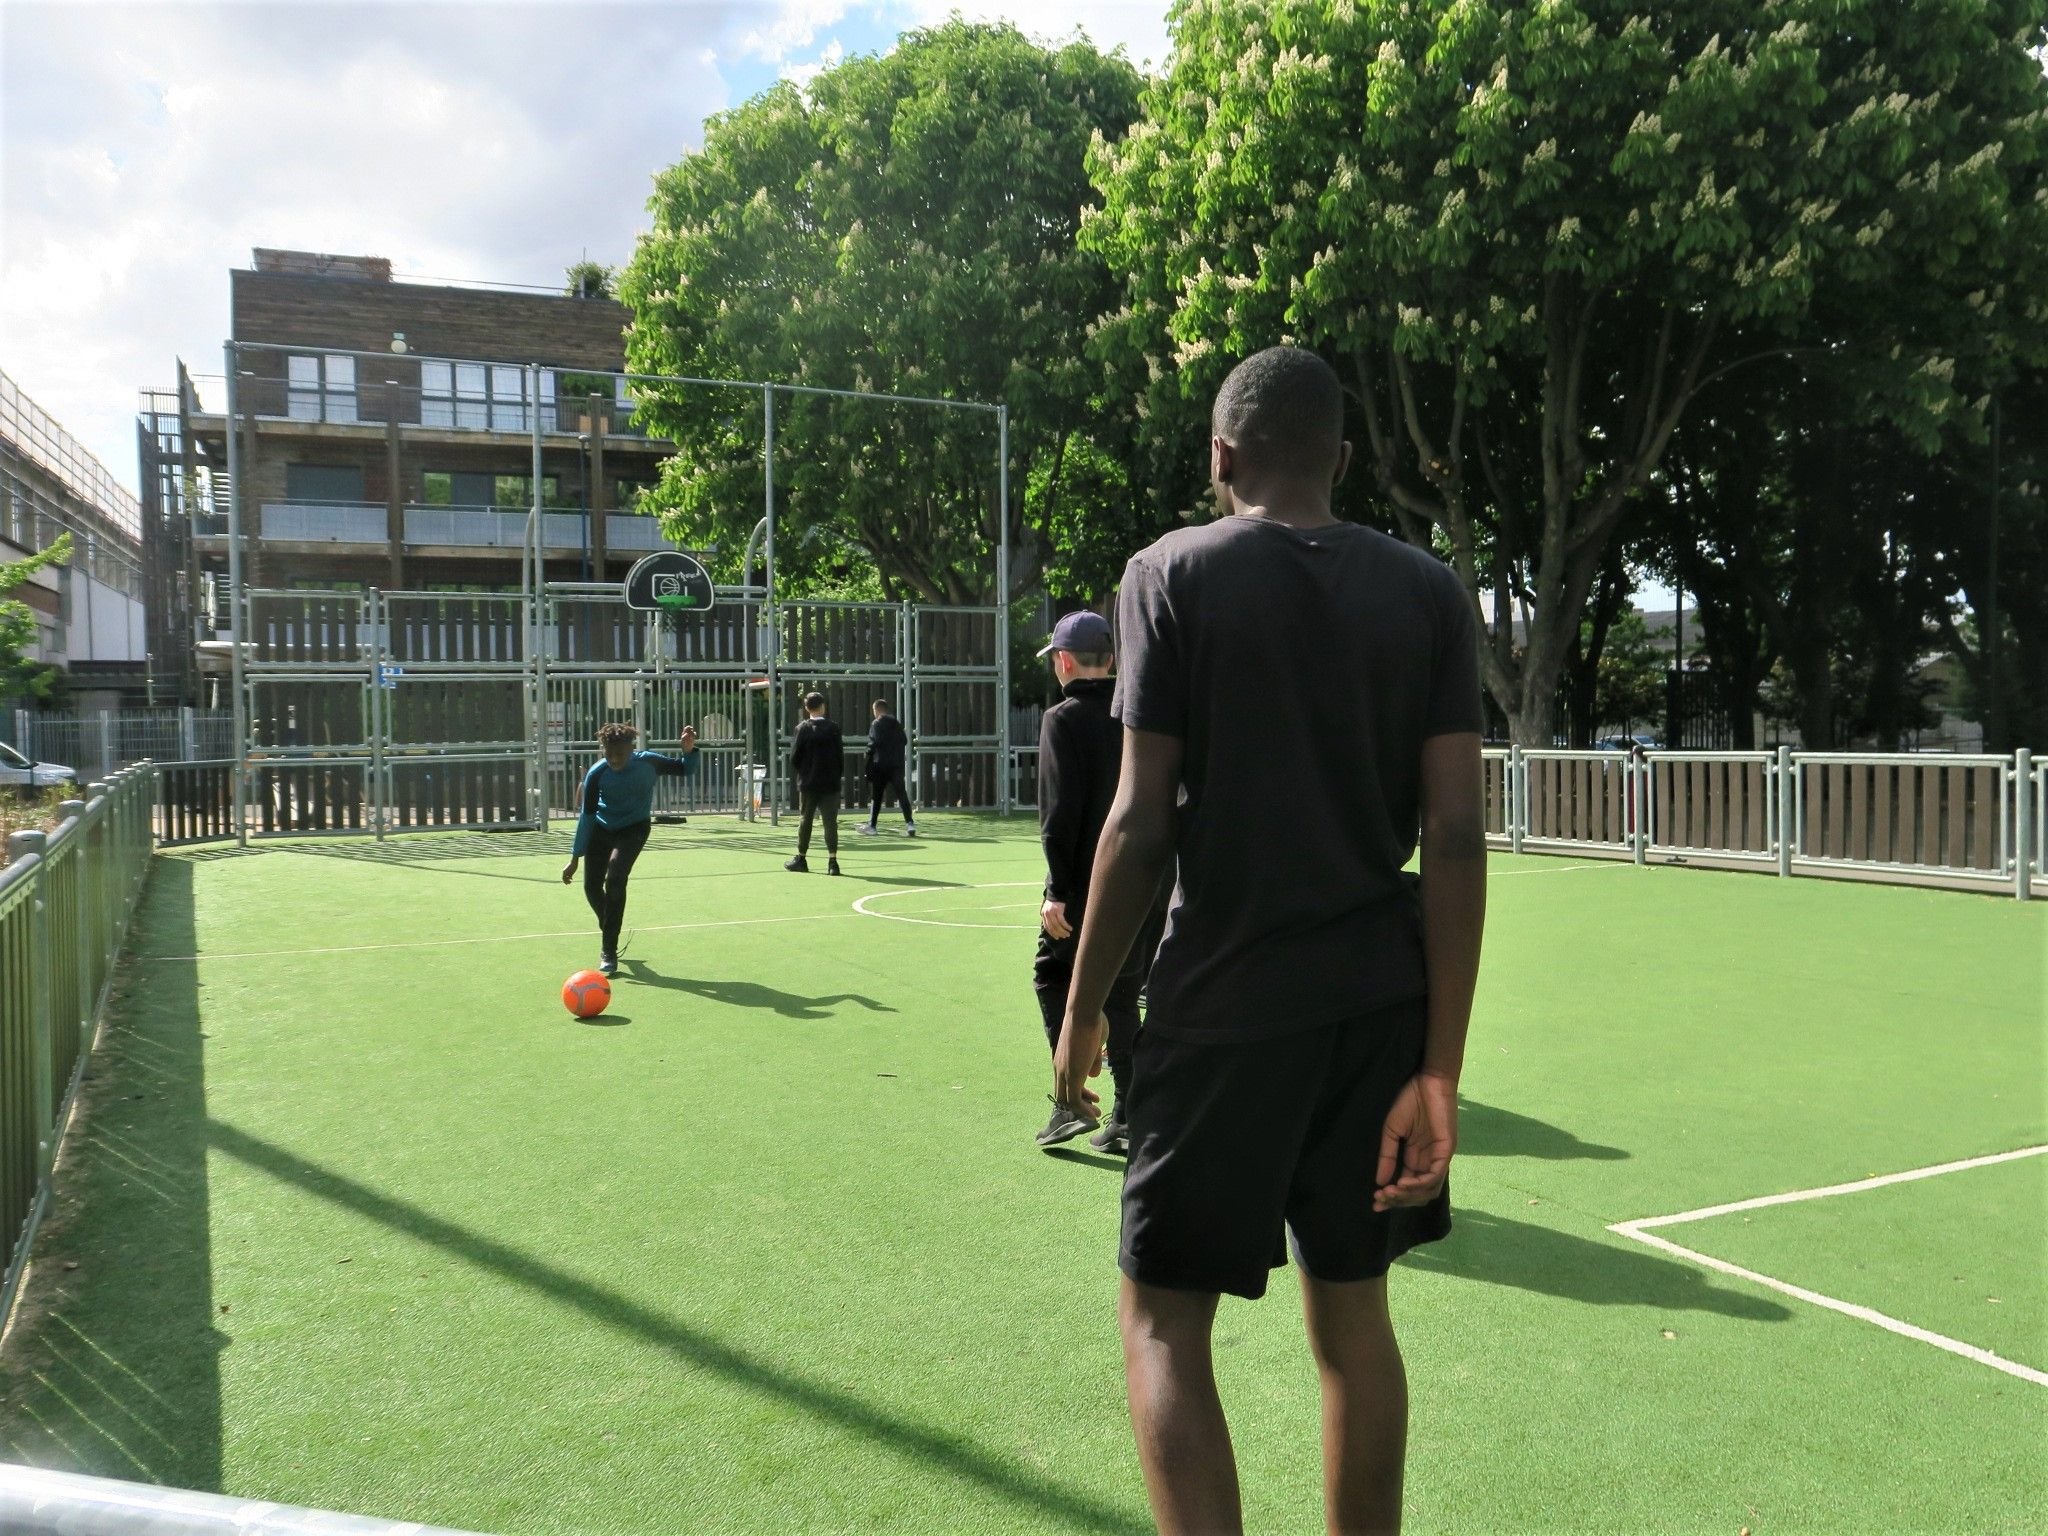 Pantin, le 10 mai 2021. Une partie de football entre collégiens au city stade situé près du stade Charles-Auray. LP/Anthony Lieures